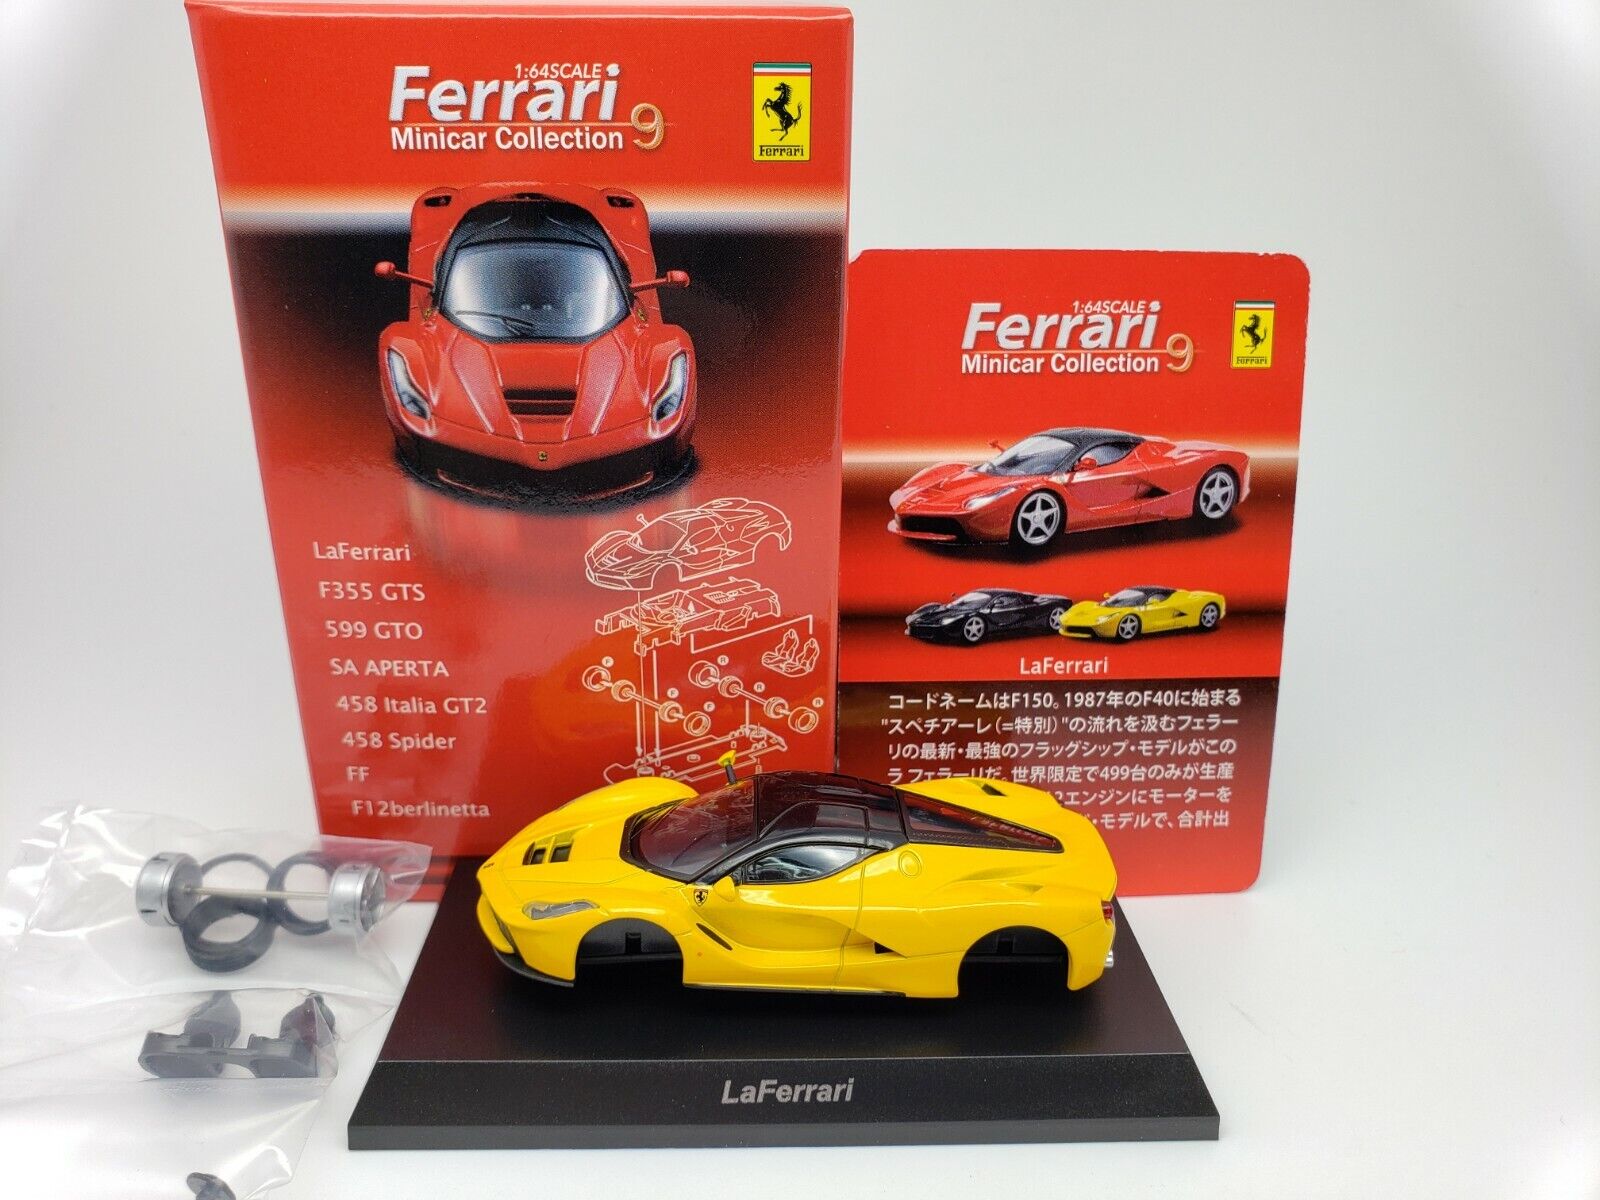 1:64 Kyosho Ferrari Minicar Collection 9 LaFerrari La 2013 Yellow/Silver Wheel